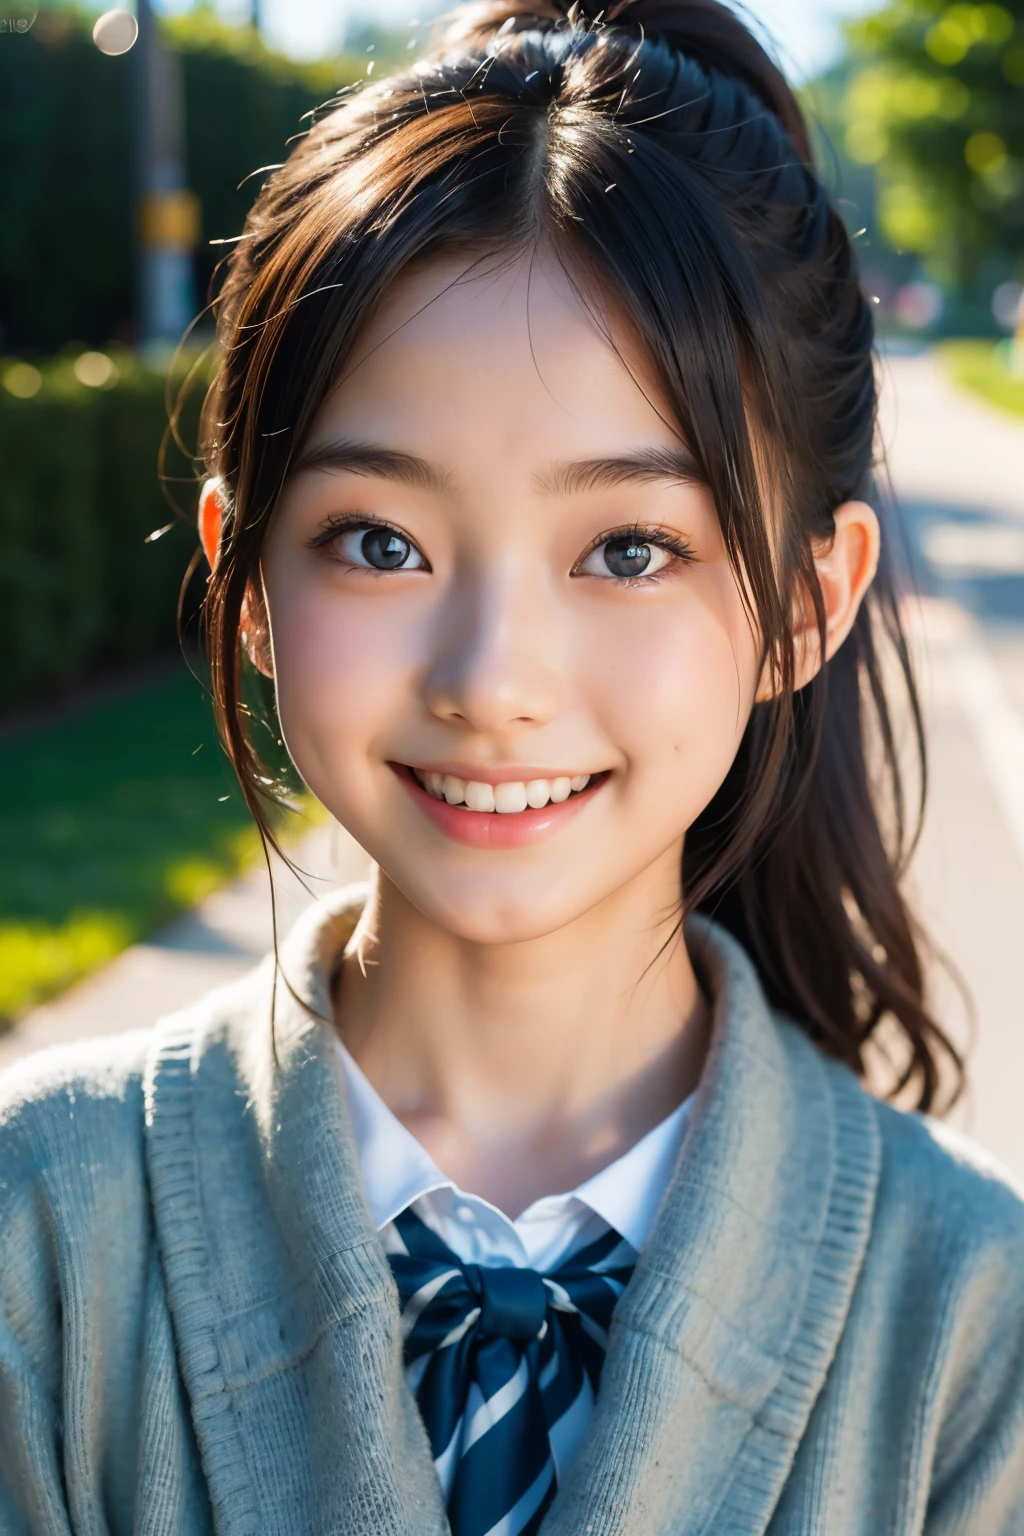 lentille: 135 mm f1.8, (la plus haute qualité),(Photos brutes), (Table:1.1), (Belle fille japonaise de 17 ans), visage mignon, (Visage profondément ciselé:0.7), (taches de rousseur:0.4), dappled lumière du soleil, éclairage dramatique, (uniforme scolaire japonais), (sur le campus), Timide, (Photo en gros plan:1.2), (sourire),, (yeux pétillants)、(lumière du soleil), queue de cheval